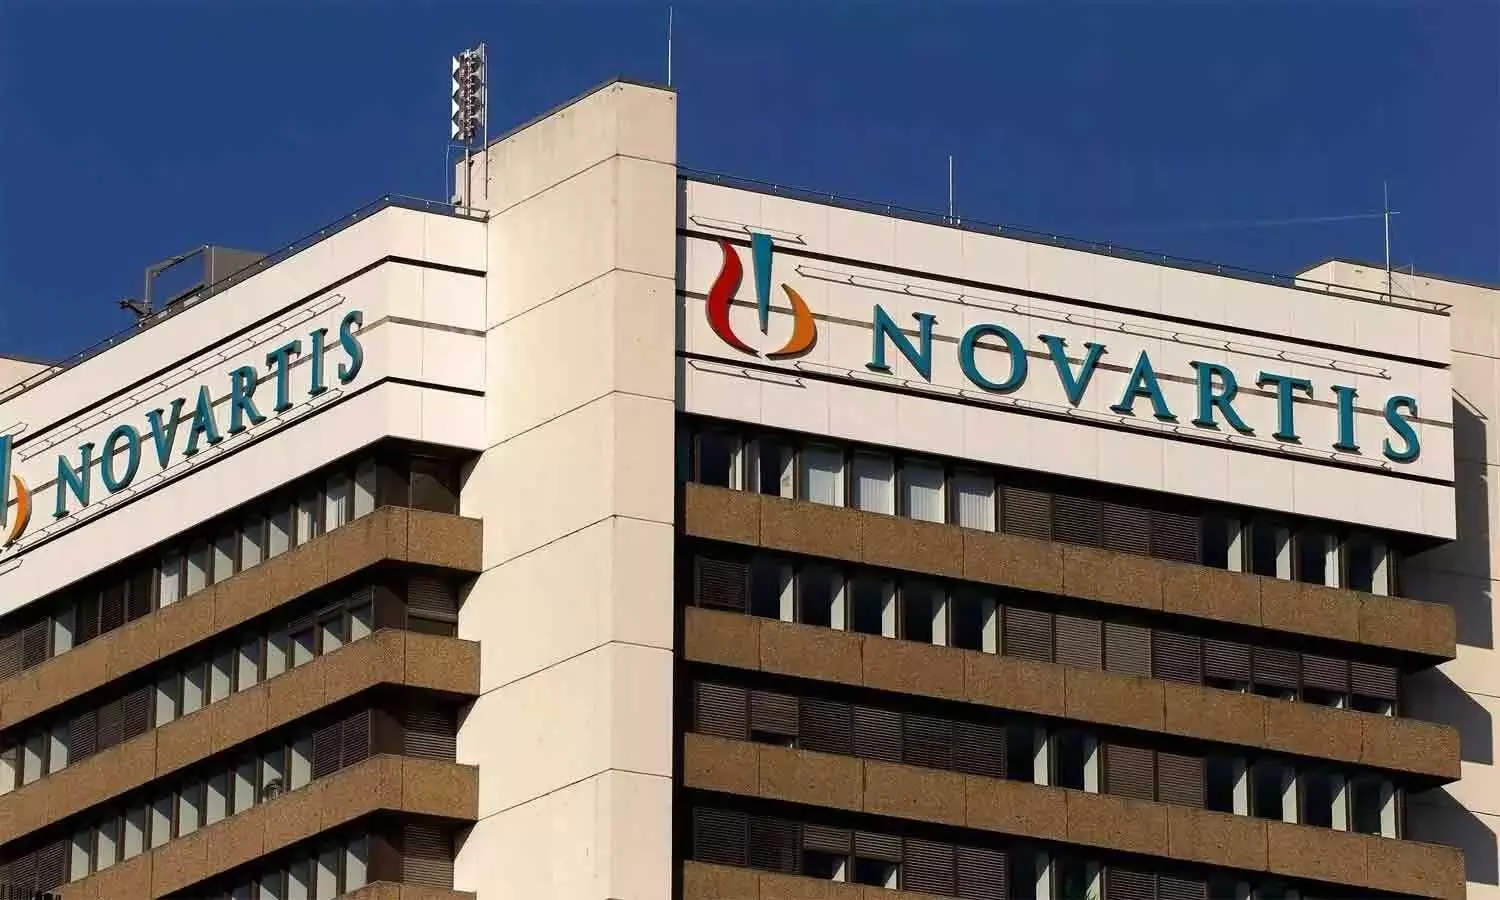 Novartis lifts full year earnings on higher prescriptions